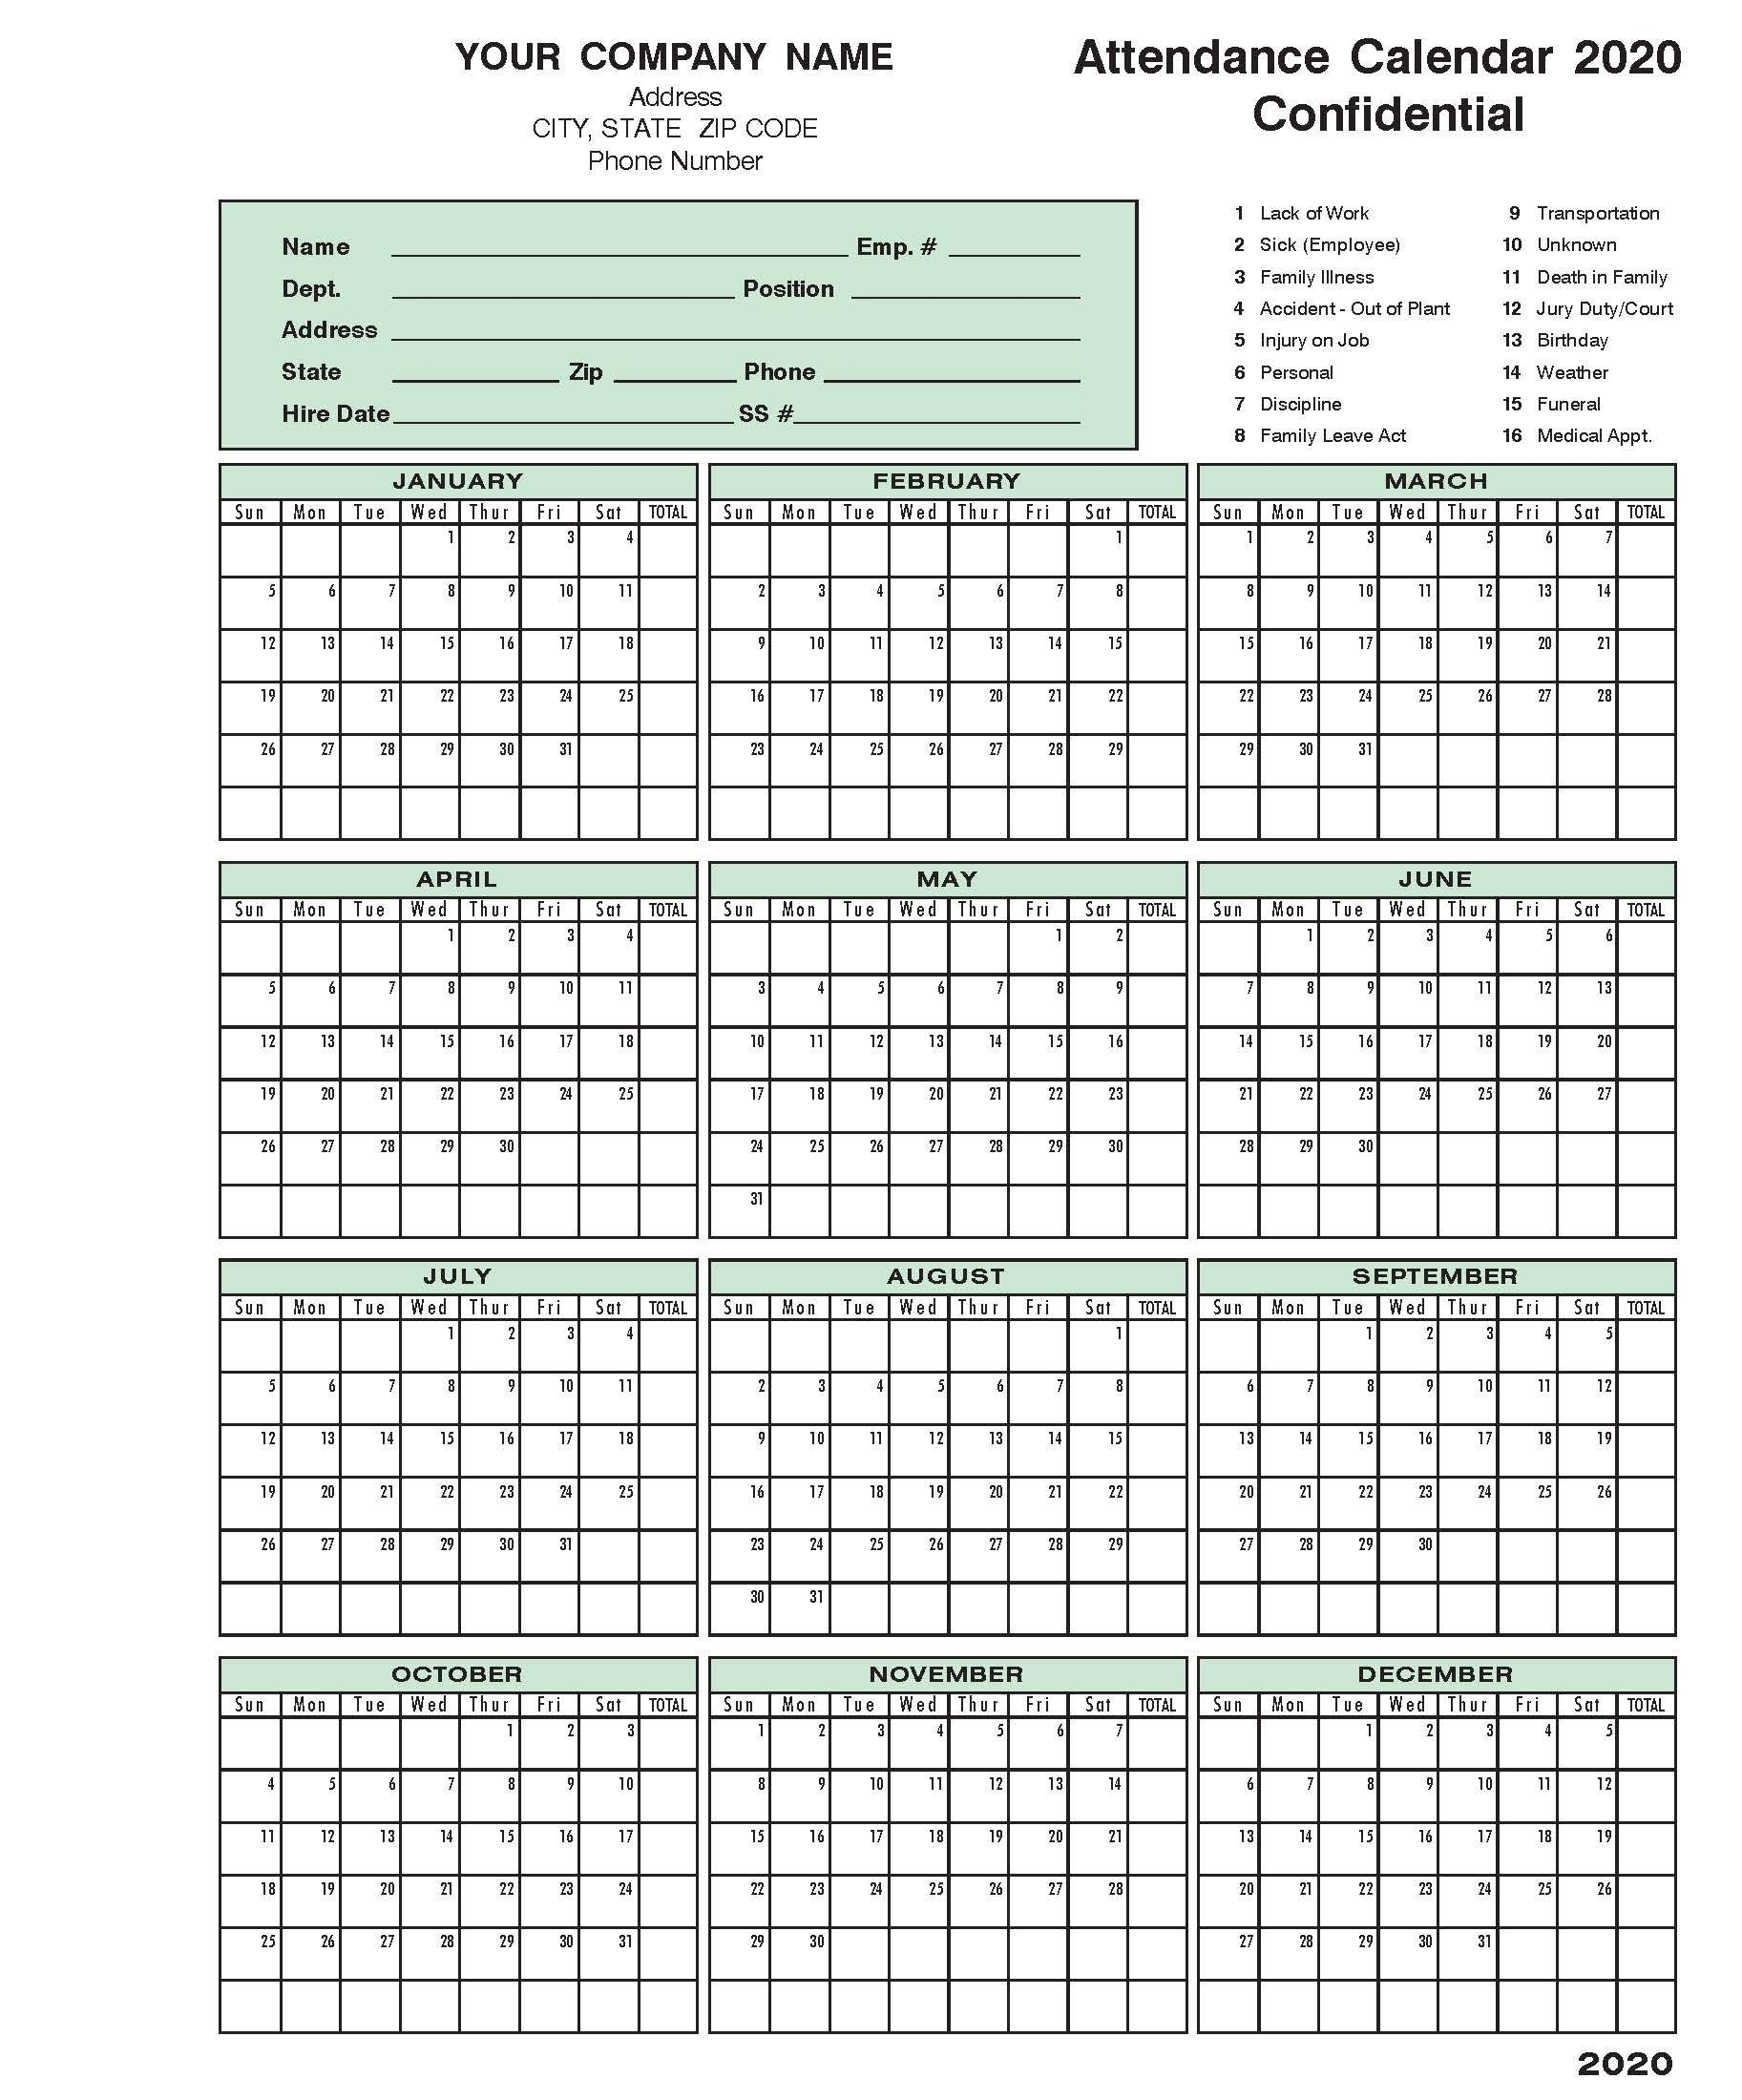 2020 Attendance Calendar In 2020 | Calendar 2020, Excel regarding Free Employee Attendance Calendar 2020